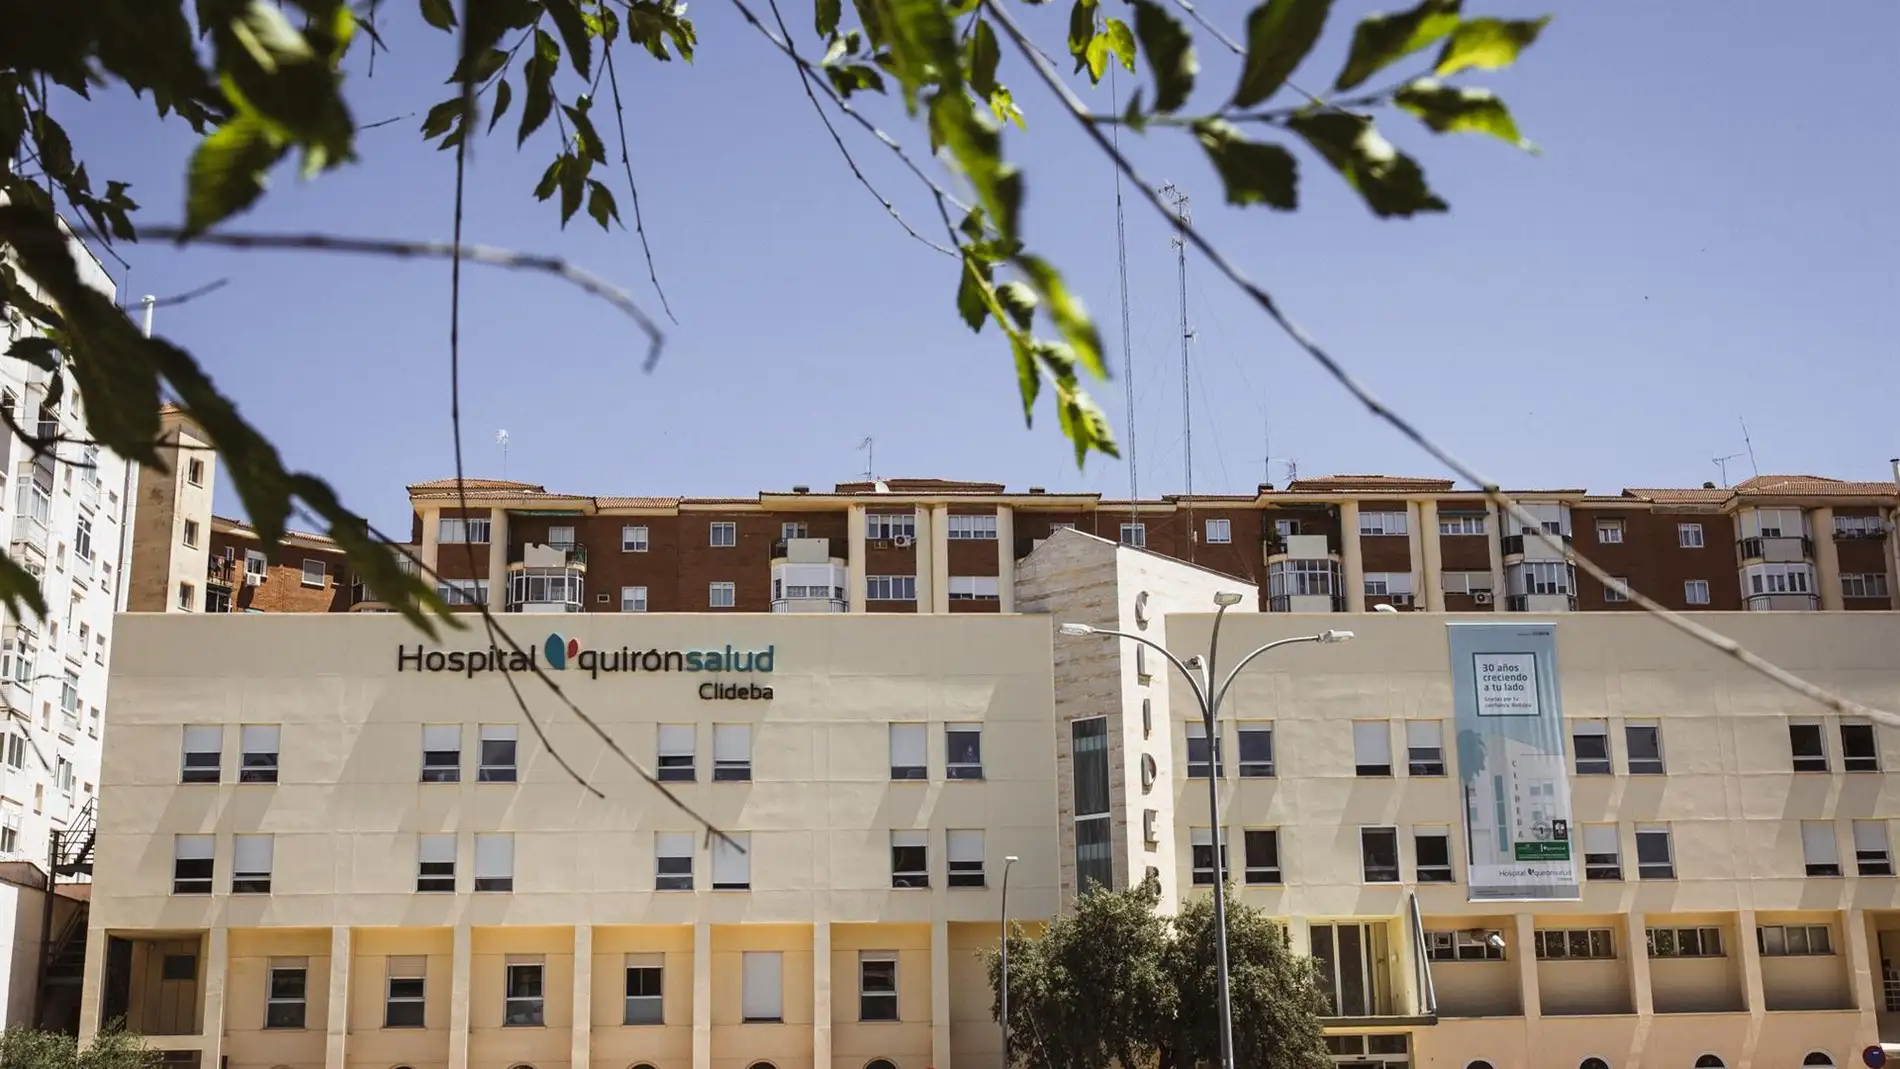 El Hospital Quirónsalud Clideba Badajoz consolida su gestión en la seguridad del paciente con una nueva certificación